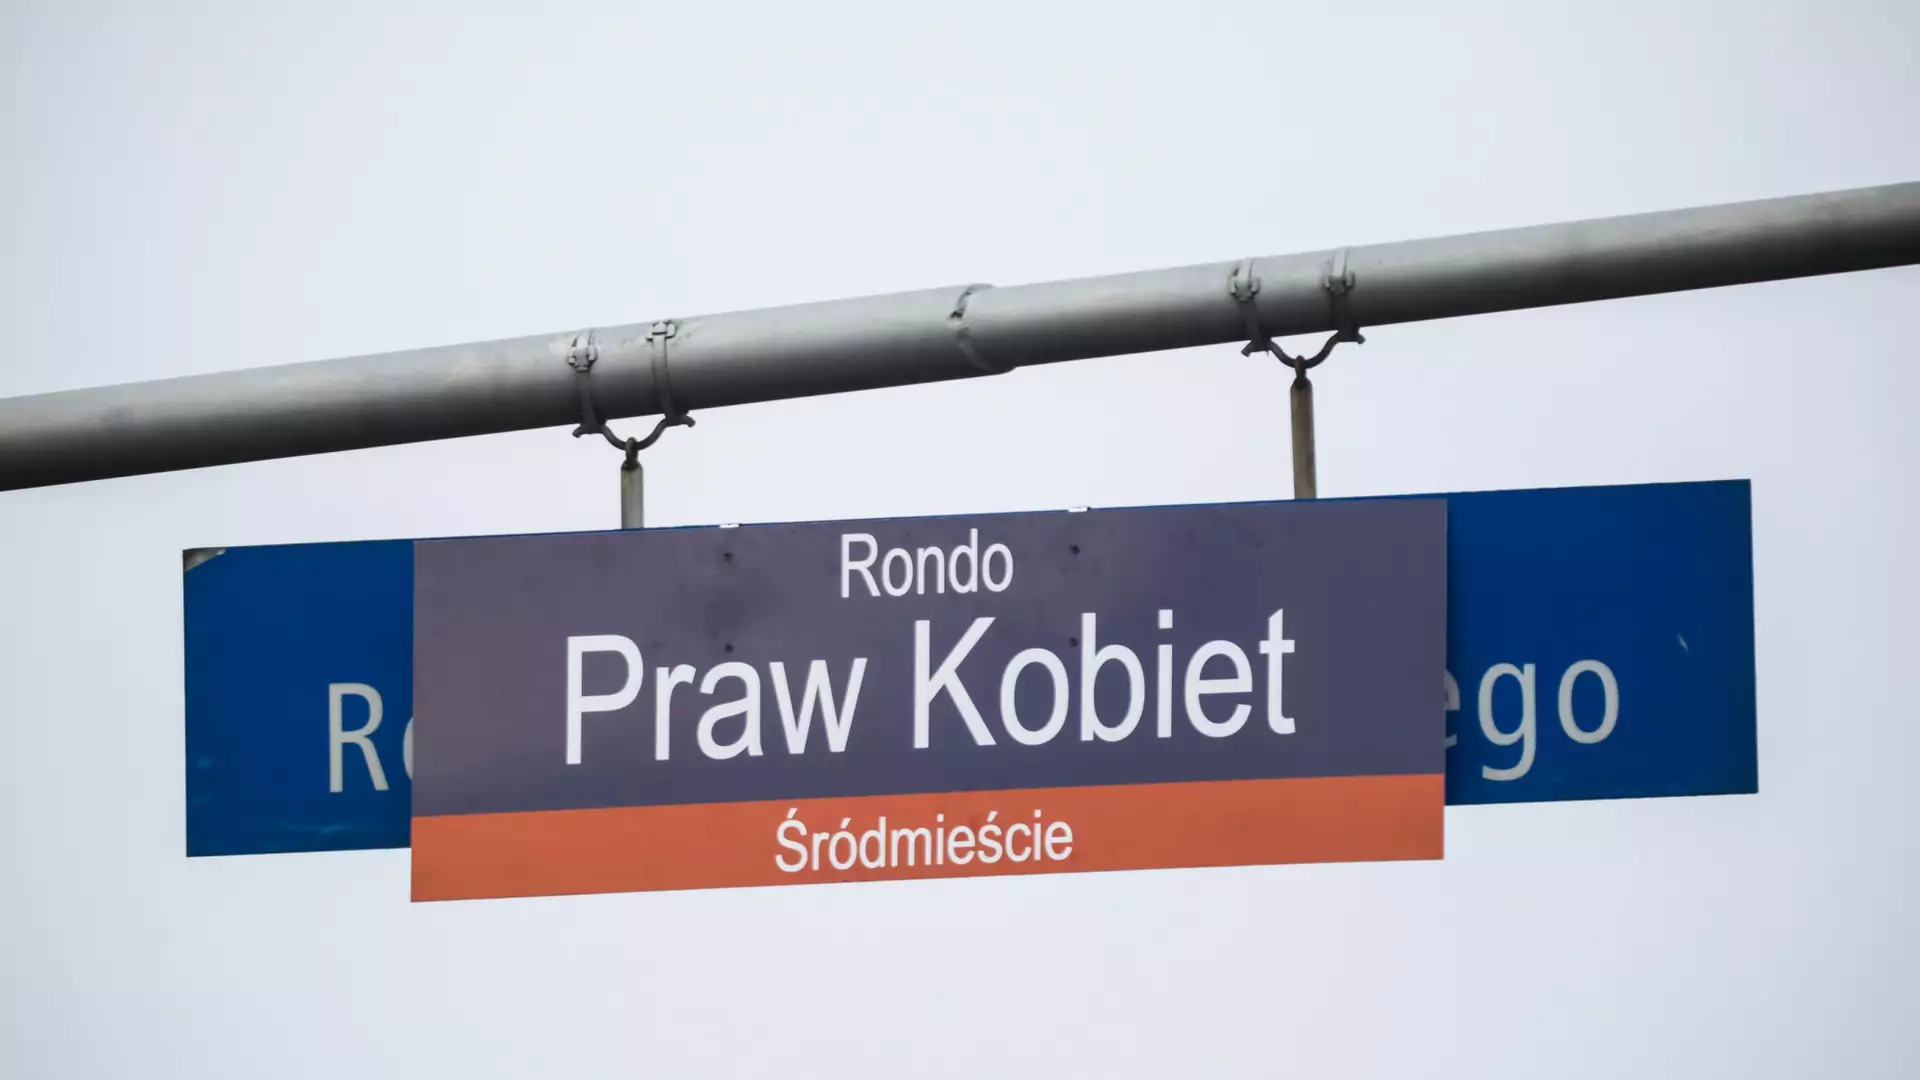 Wieś pod Warszawą będzie miała rondo Praw Kobiet. Radni PiS: "To zaostrzy konflikt"